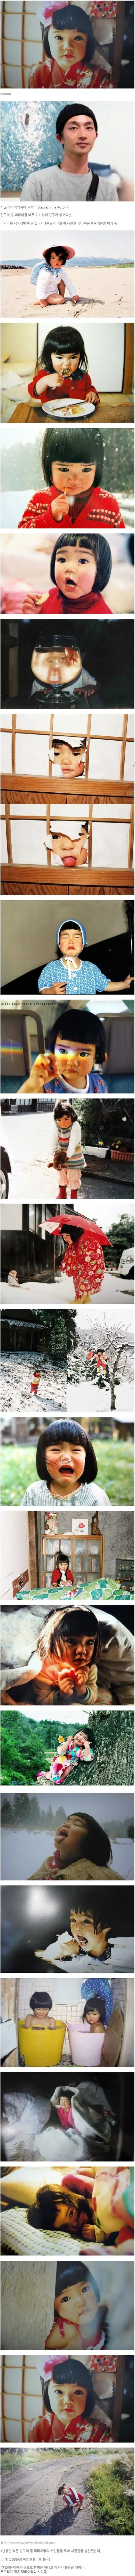 친구딸이 너무 귀여워서 1년간 사진을 찍어준 작가.jpg | mbong.kr 엠봉